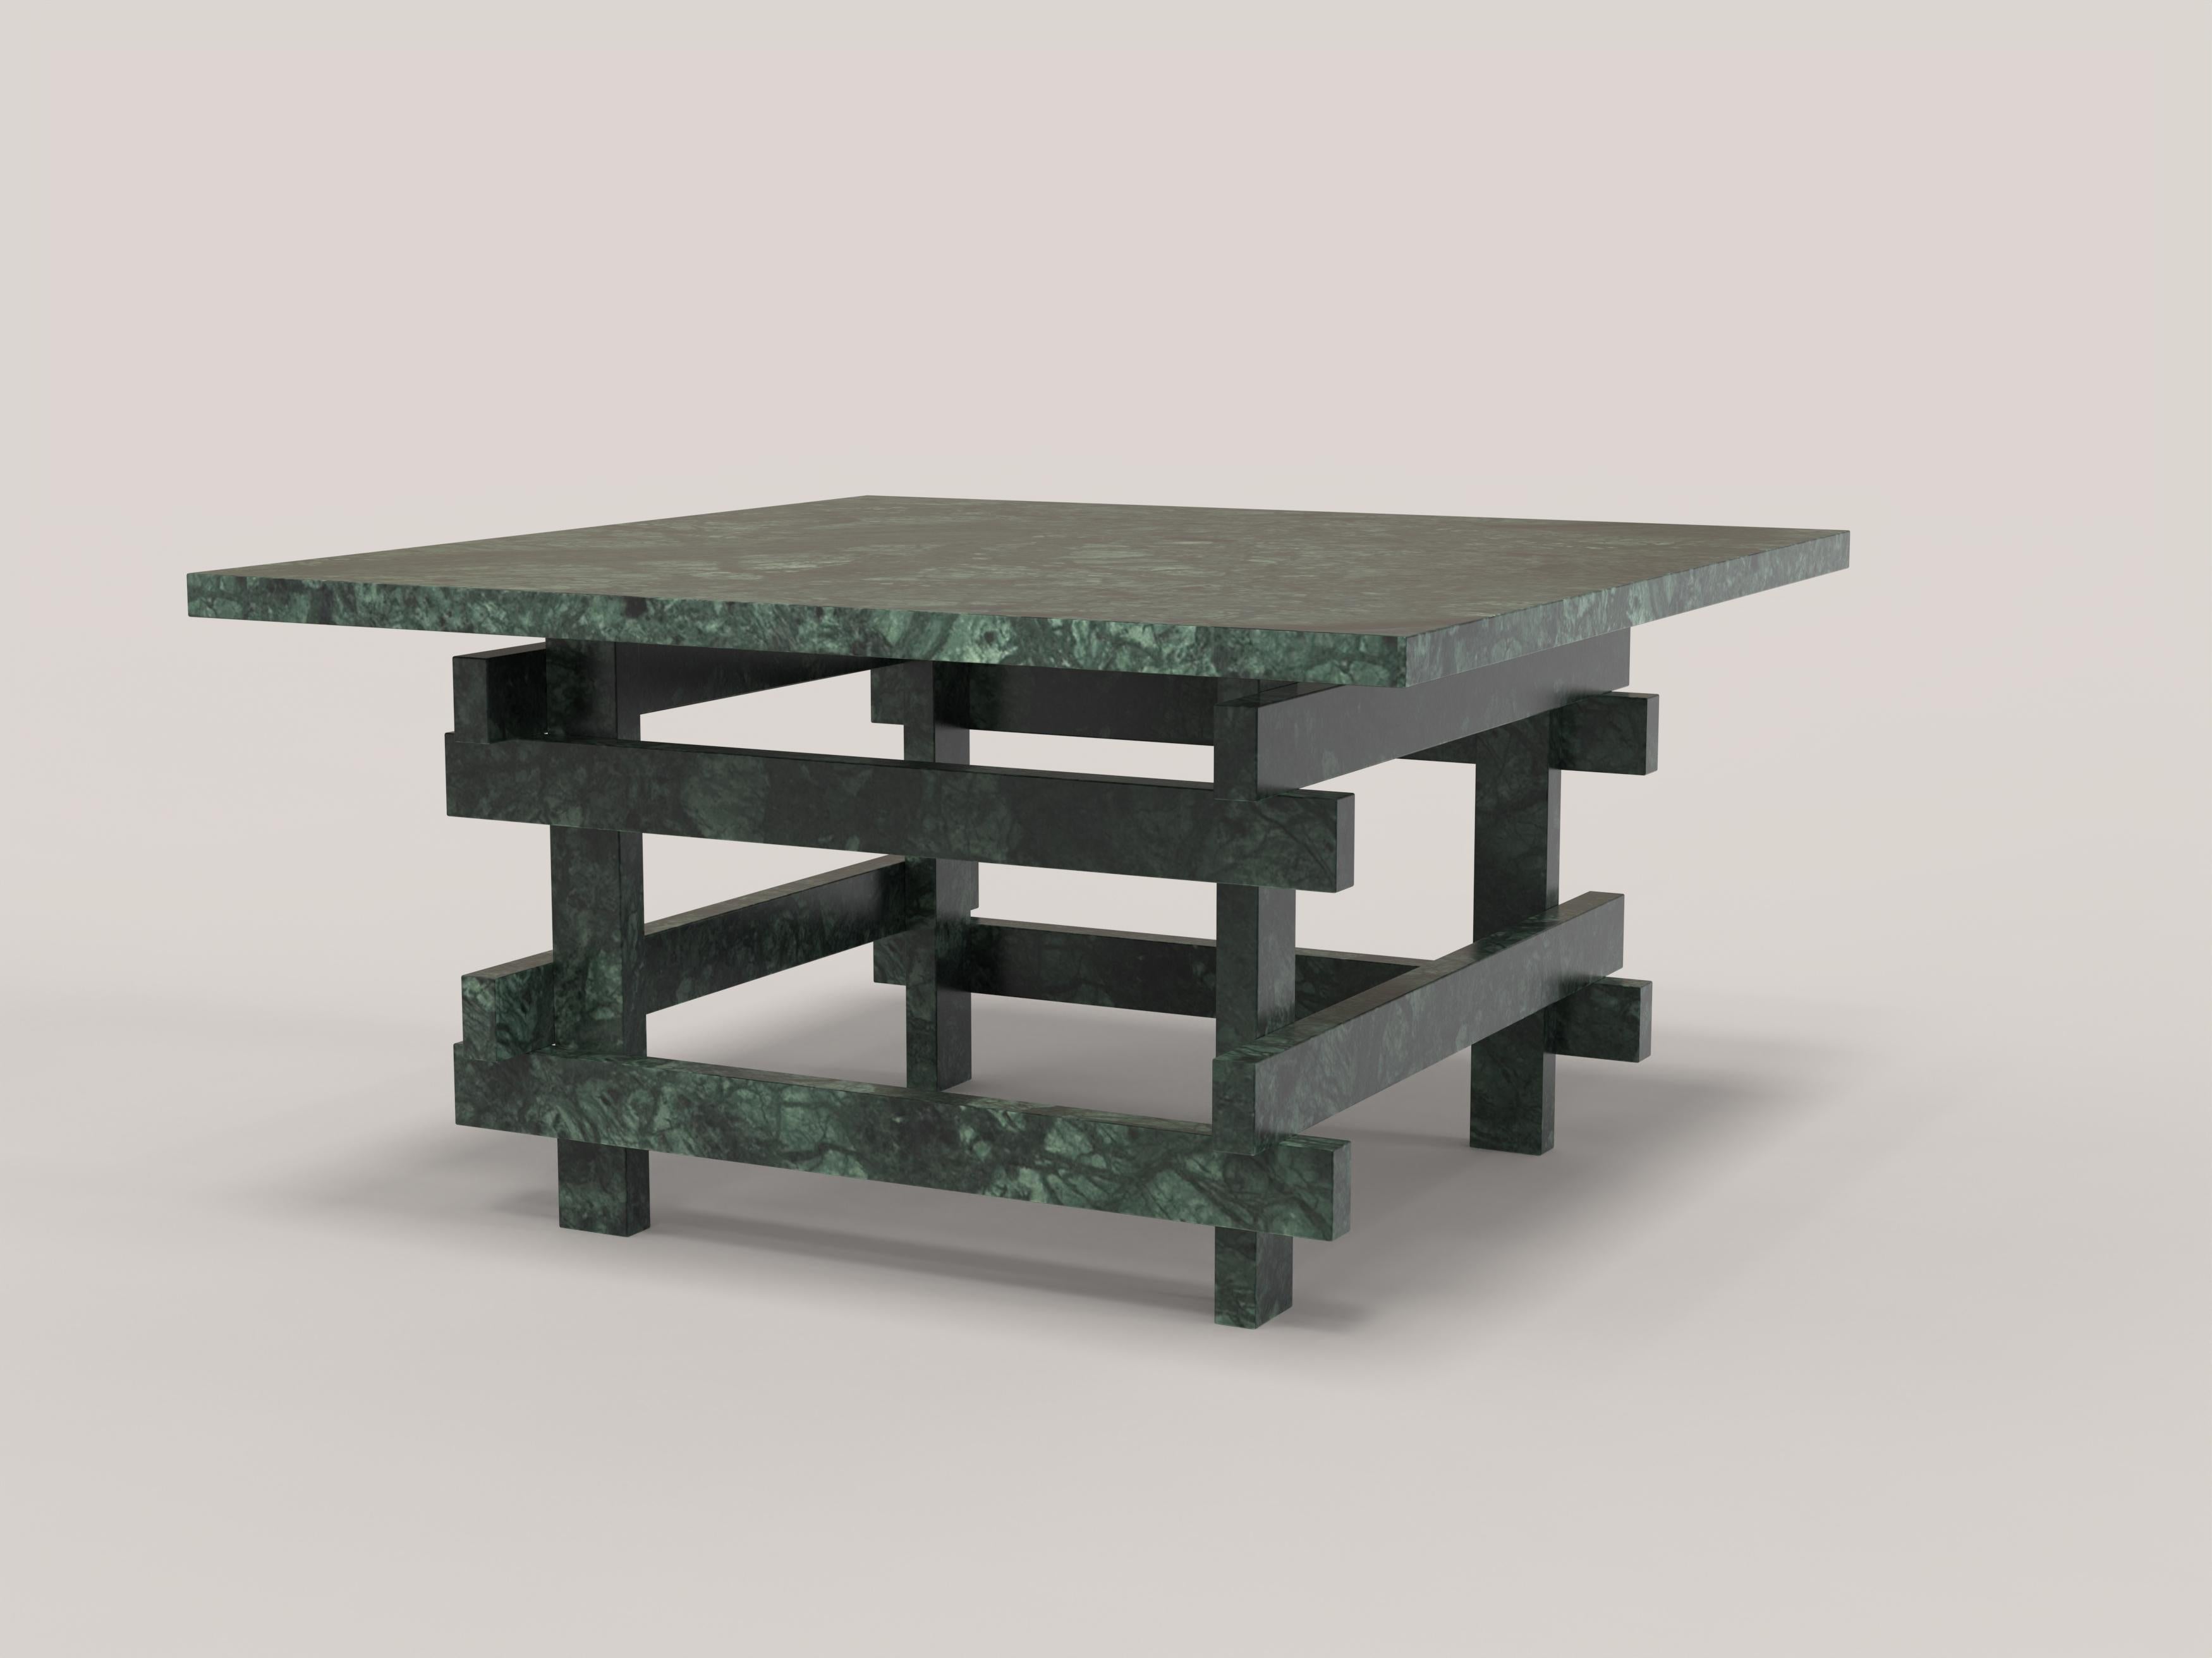 Paranoid V2 est une table basse sculpturale du 21ème siècle réalisée par des artisans italiens en marbre vert du Guatemala. La pièce est fabriquée en une édition limitée de 150 exemplaires signés et progressivement numérotés. Il fait partie du